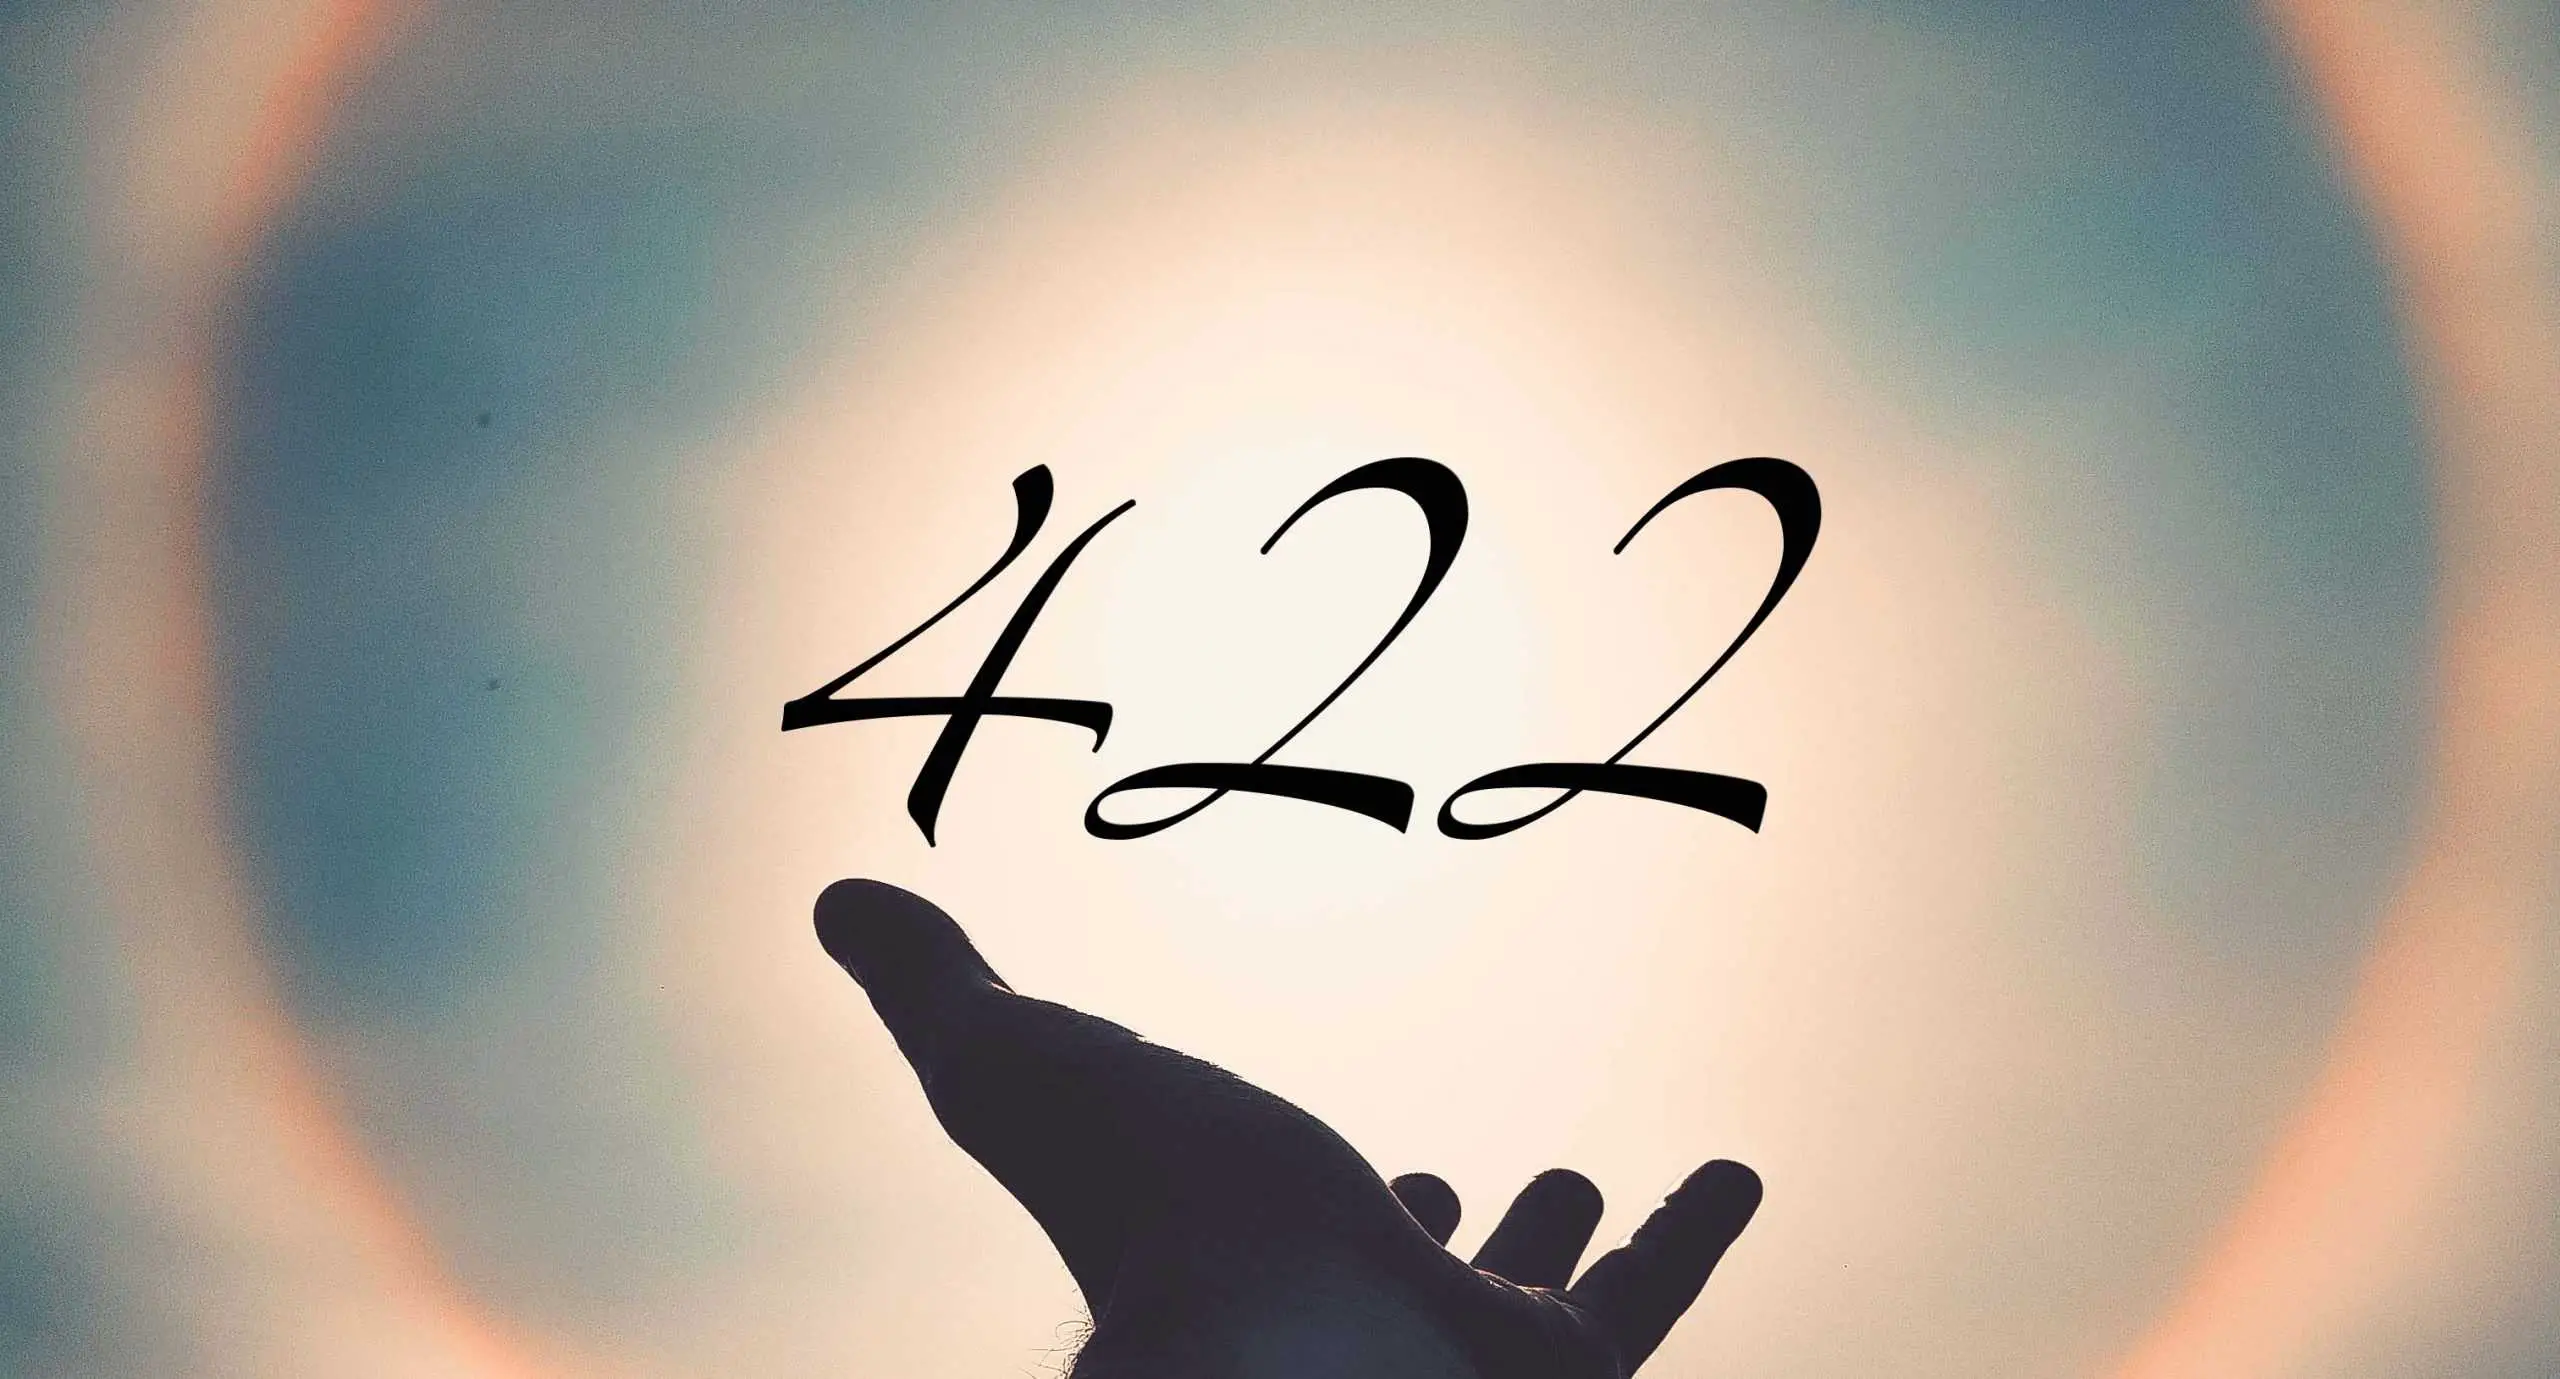 Signification du nombre 422